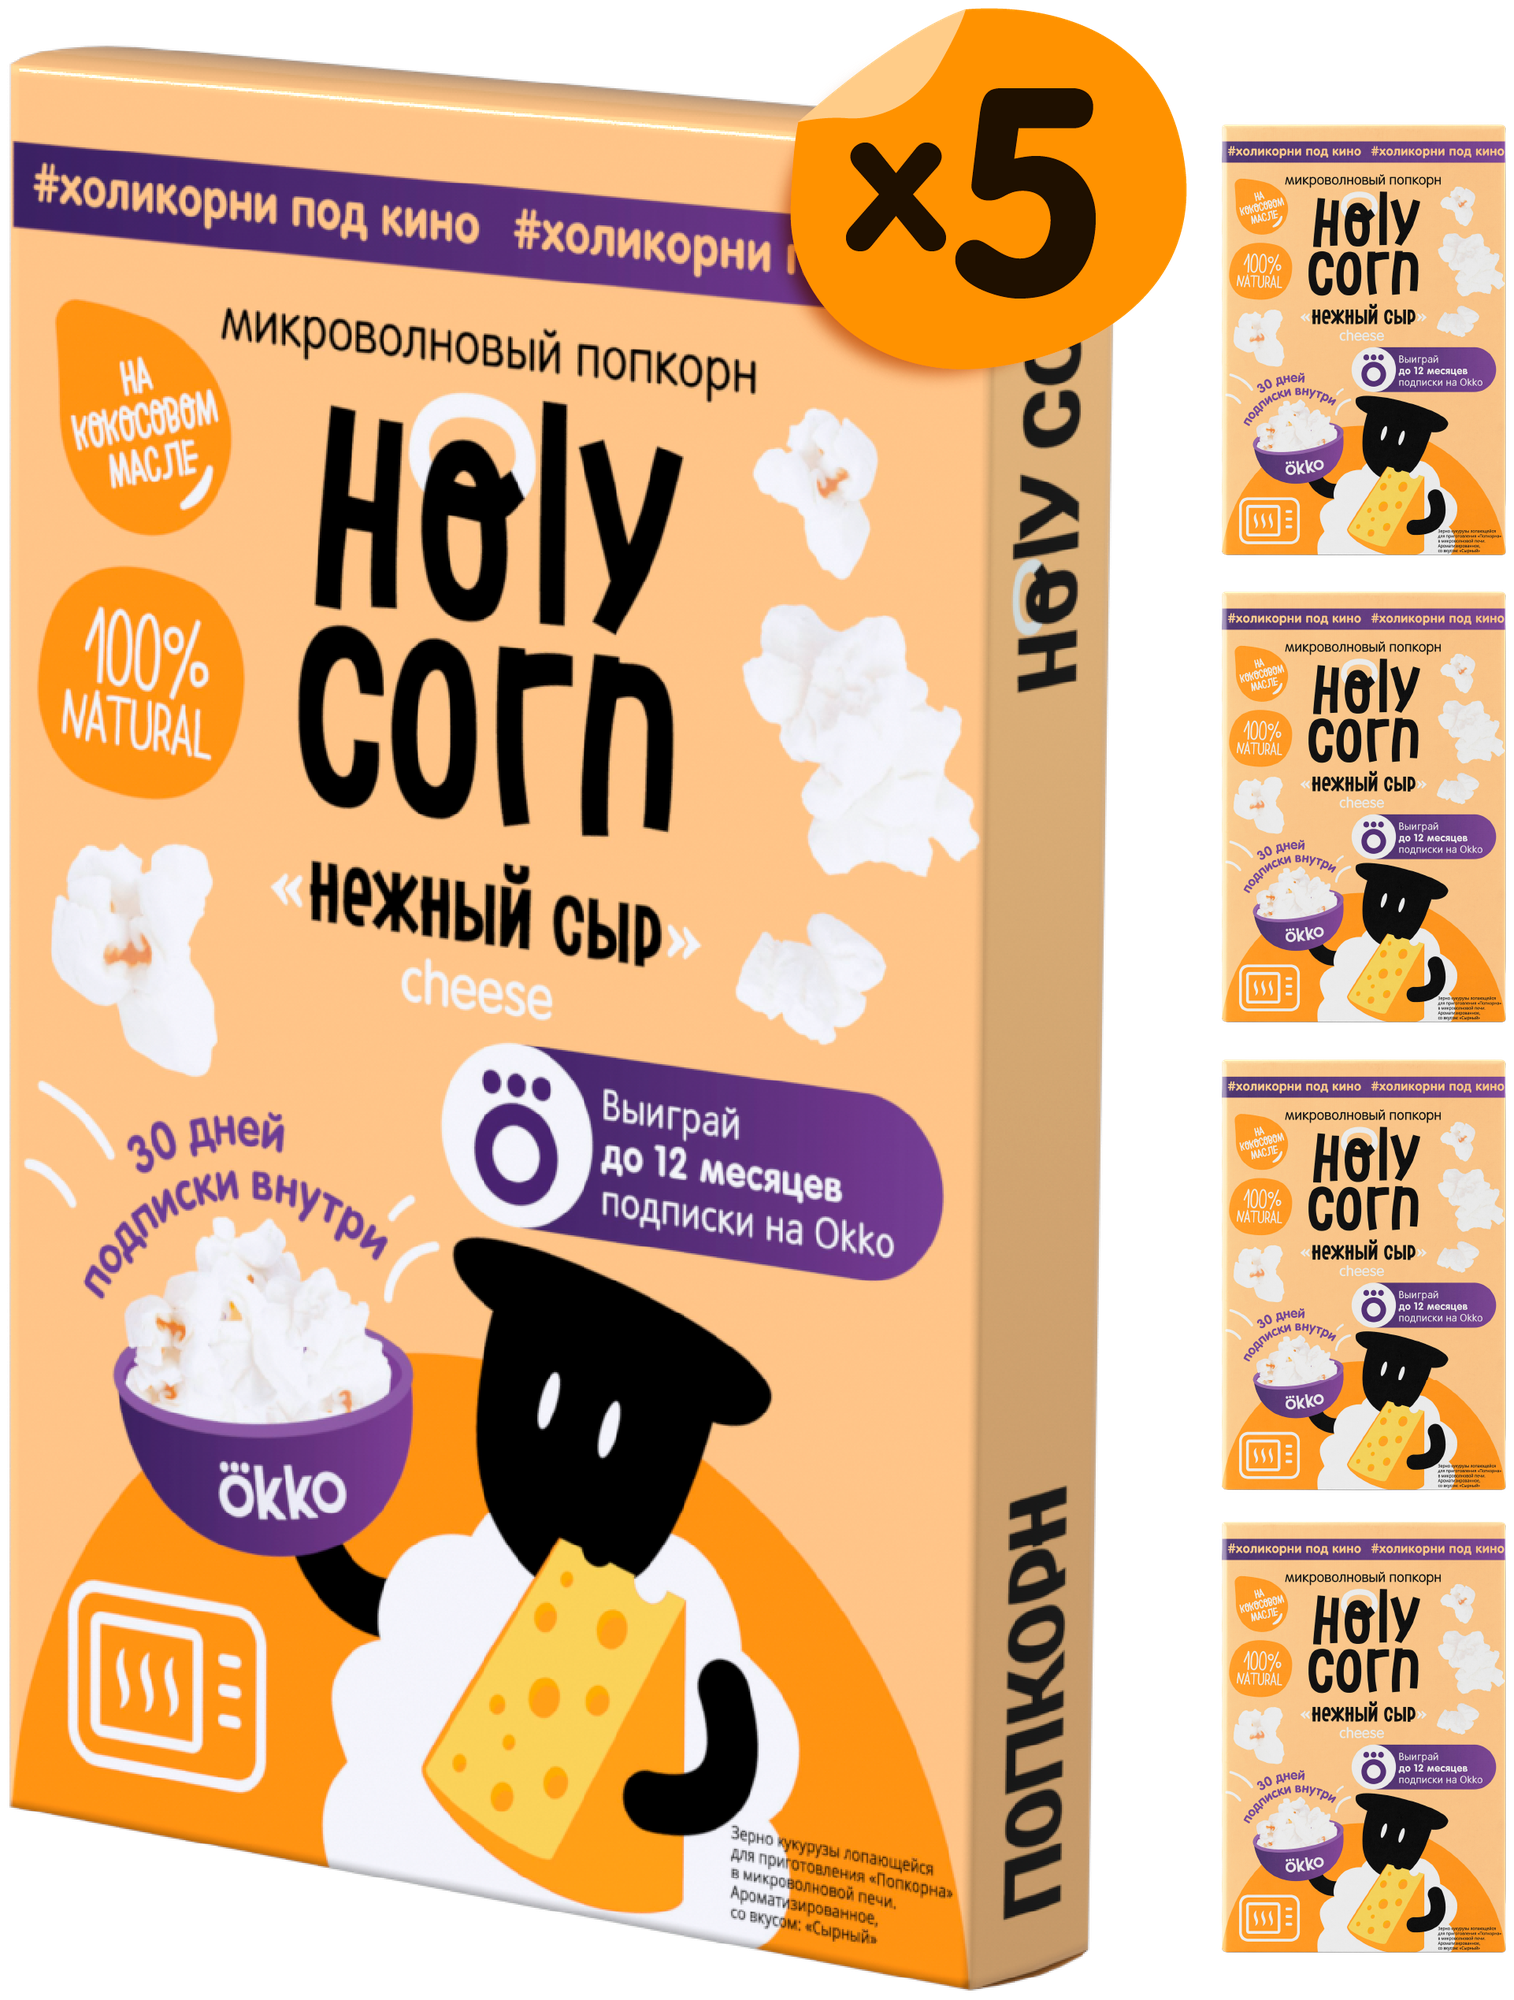 Попкорн микроволновый СВЧ Holy Corn "Нежный сыр" 70 г х 5 шт